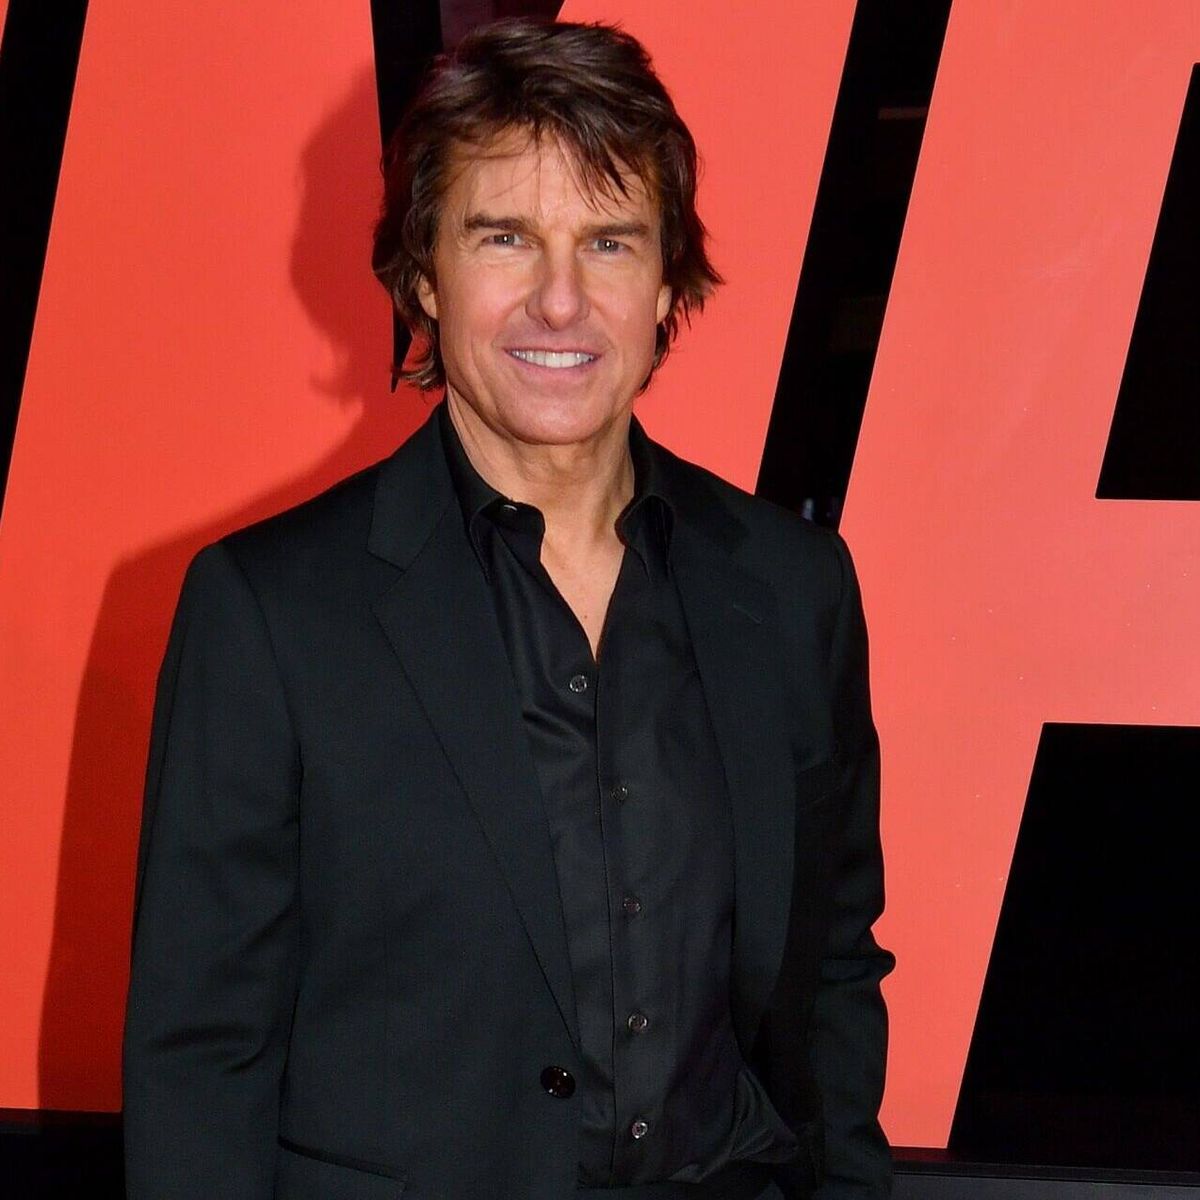 Revista aponta que Tom Cruise deseja reacender romance com Sofia